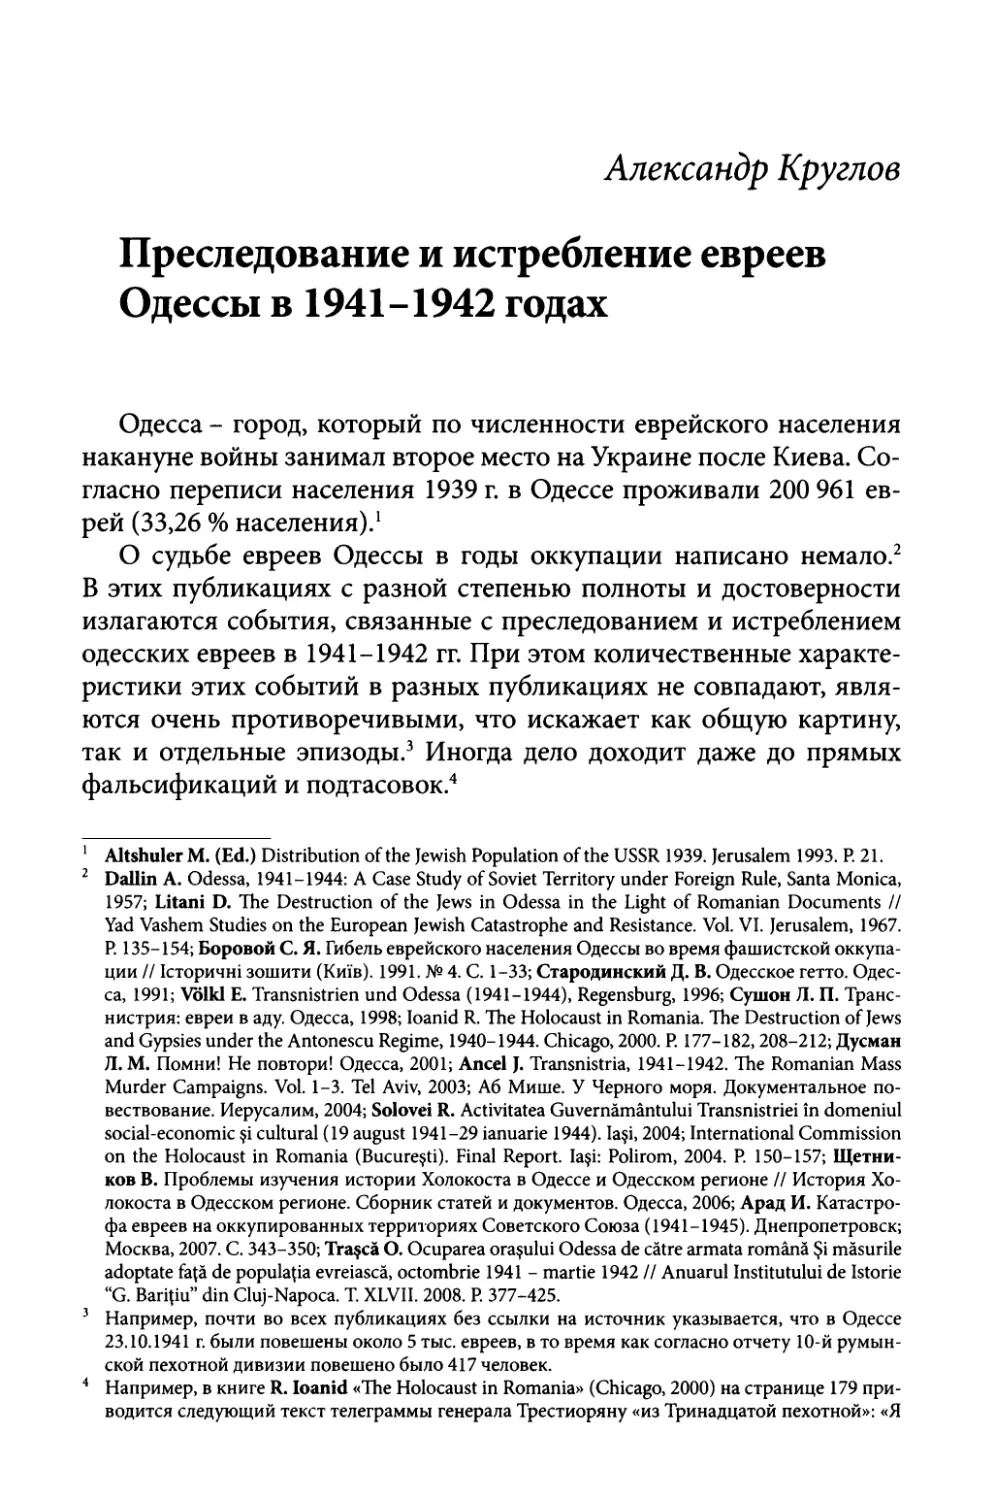 Александр Круглов. Преследование и истребление евреев Одессы в 1941-1942 годах